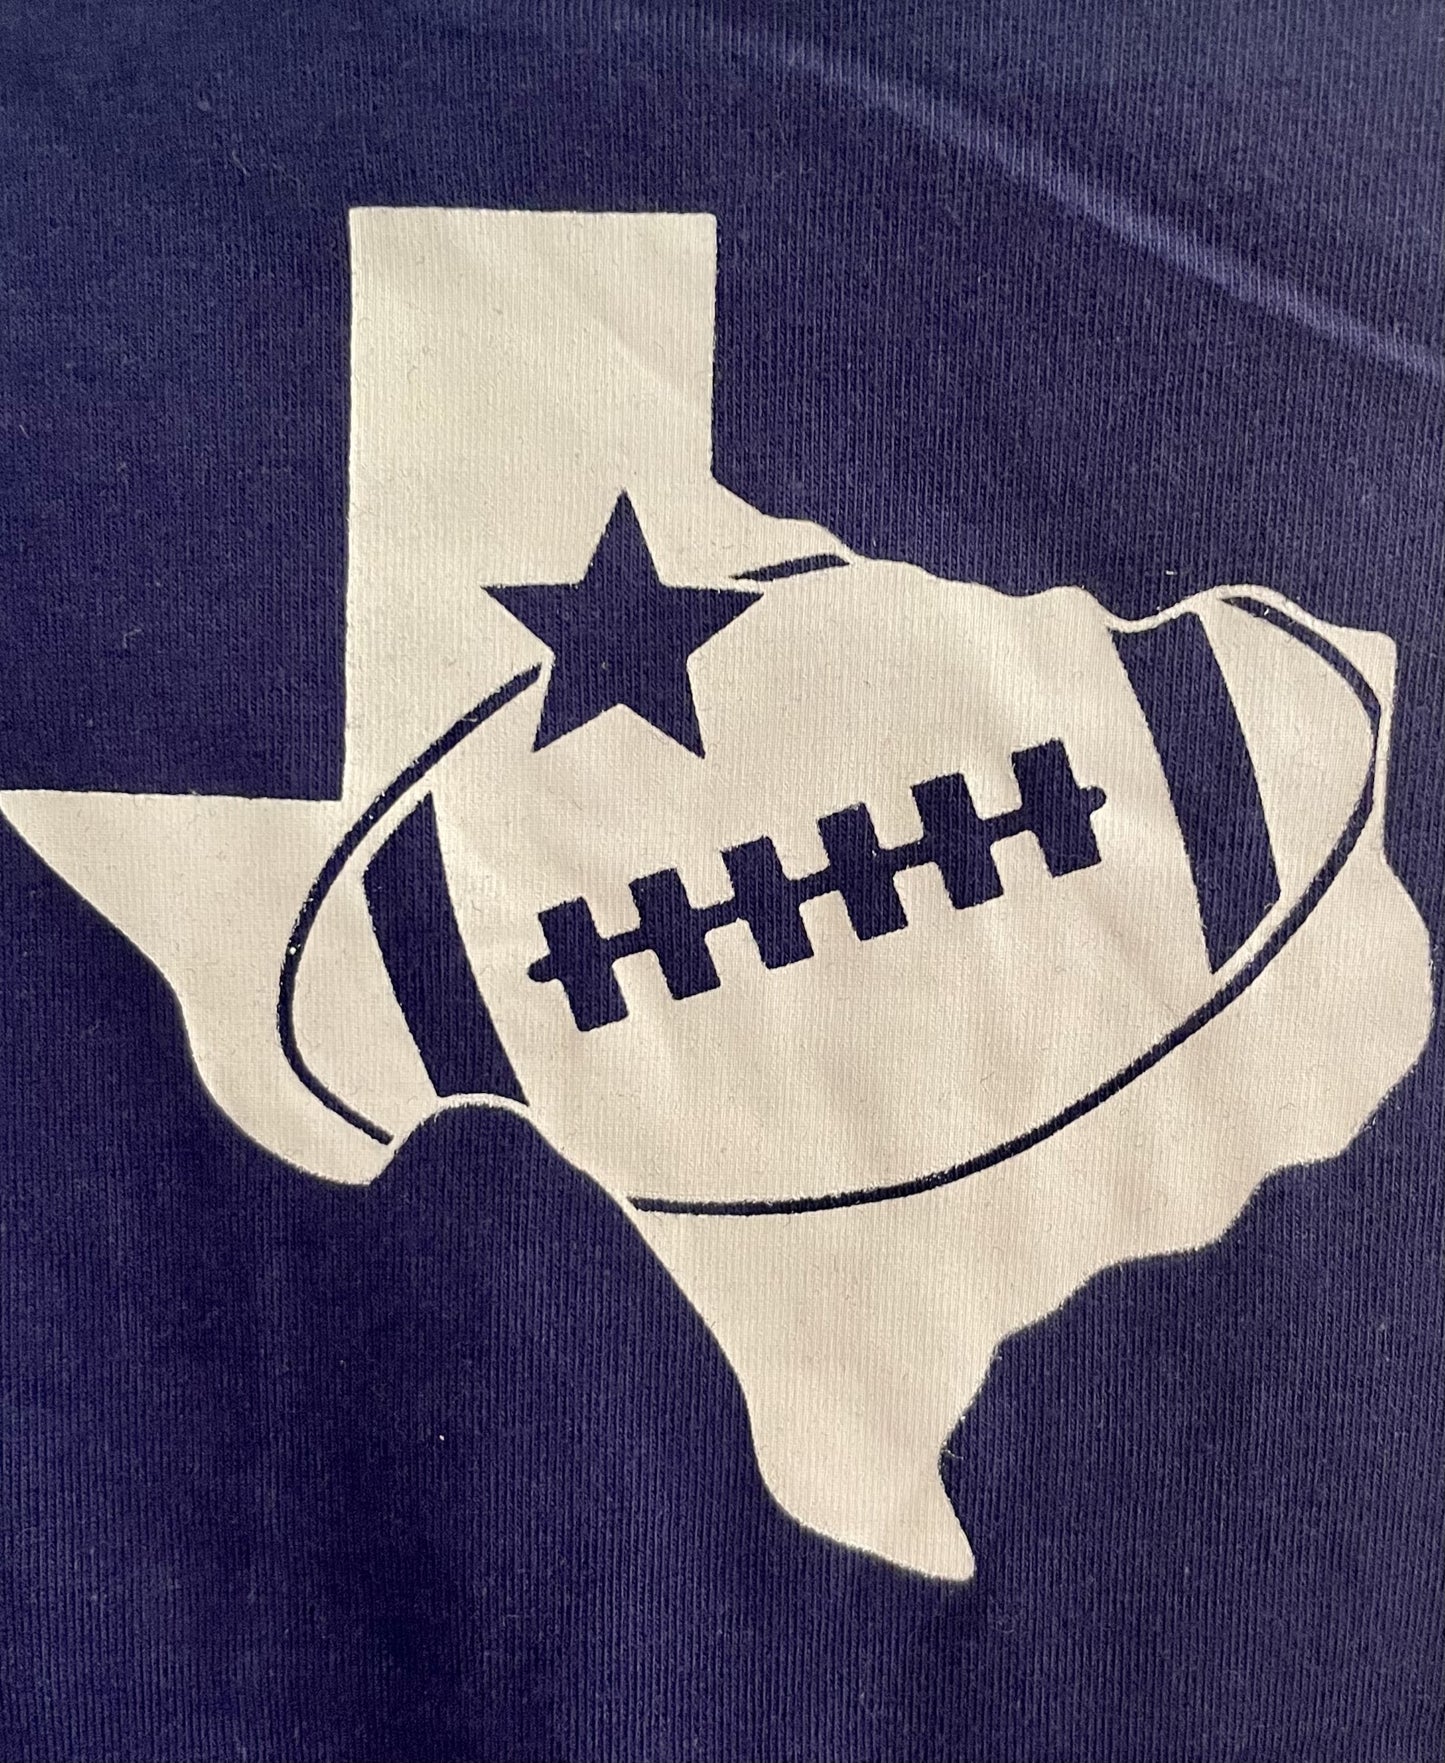 Texas Football Sweatshirt